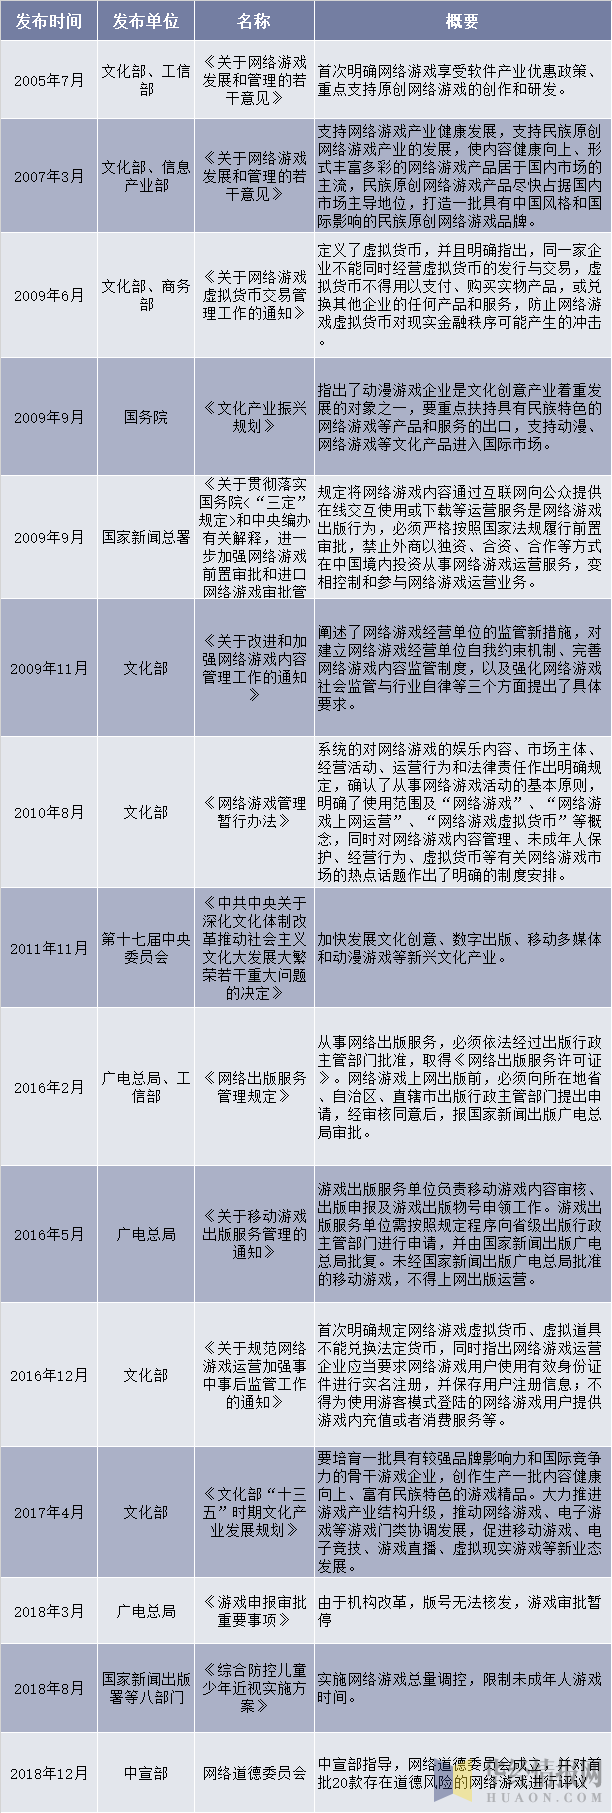 2005-2018年中国游戏行业相关产业政策和法规